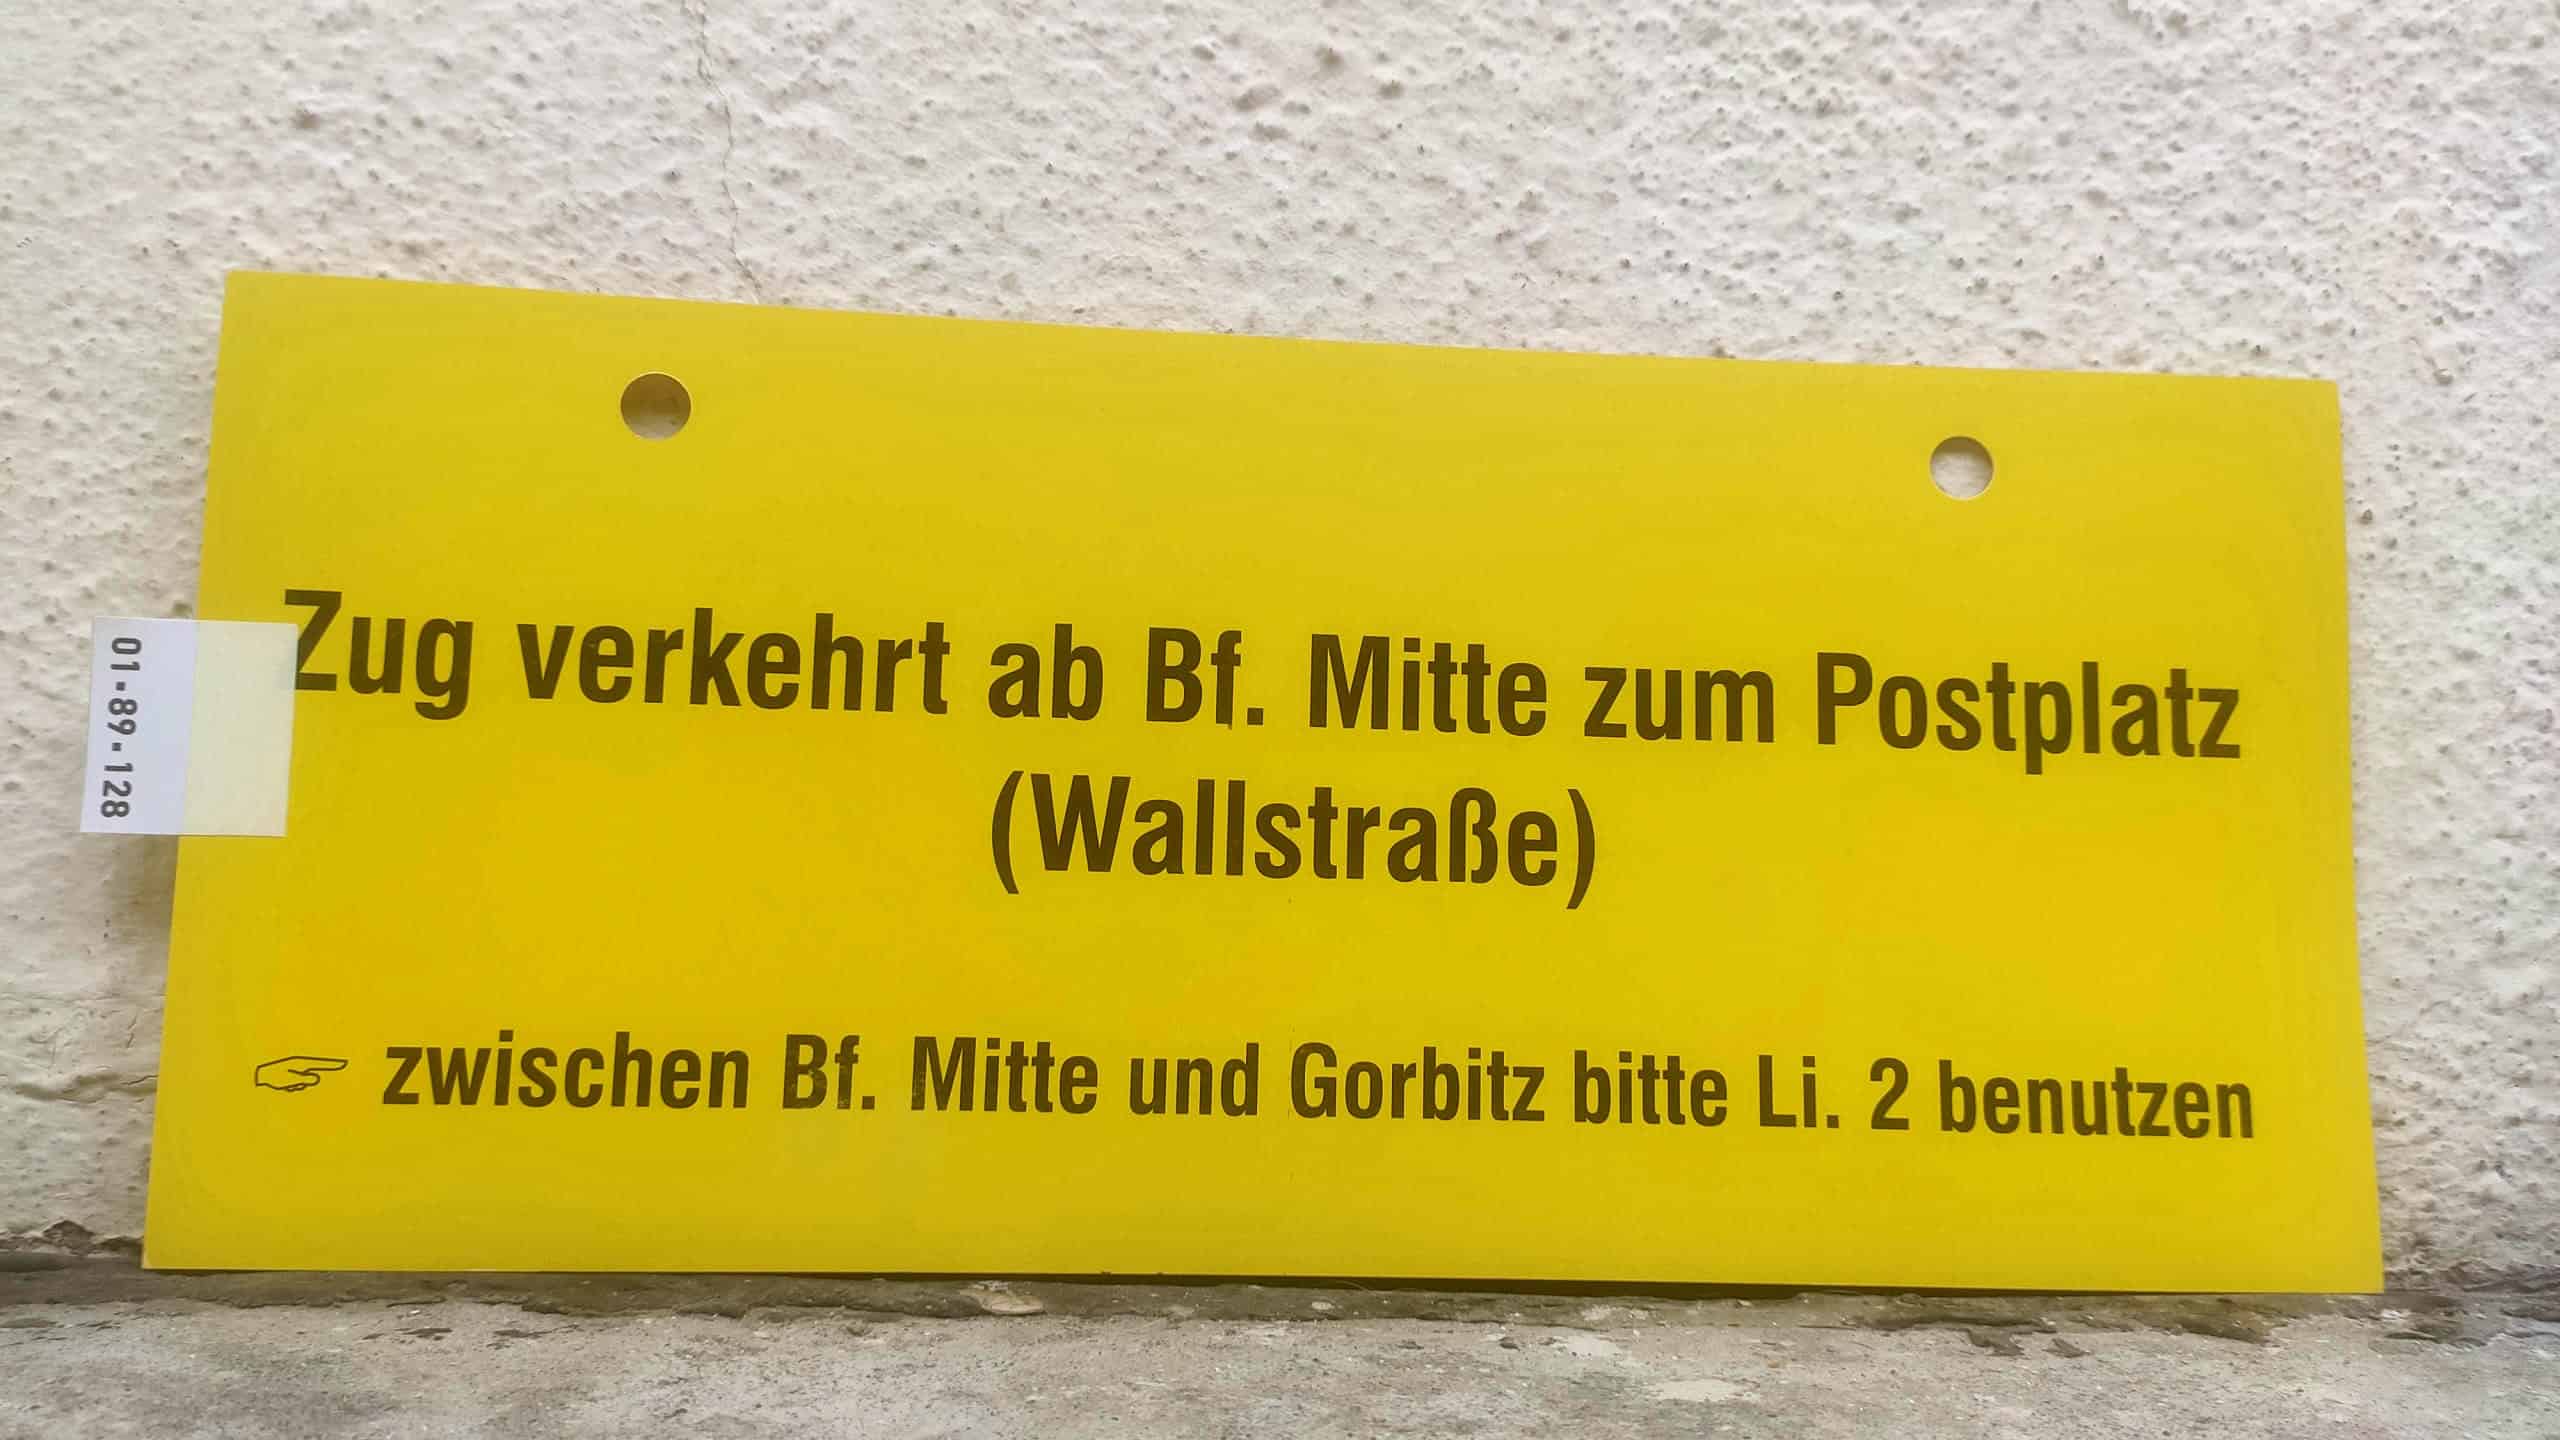 Zug verkehrt ab Bf. Mitte zum Postplatz (Wallstraße) [Zeigefinger] zwischen Bf. Mitte und Gorbitz bitte Li. 2 benutzen